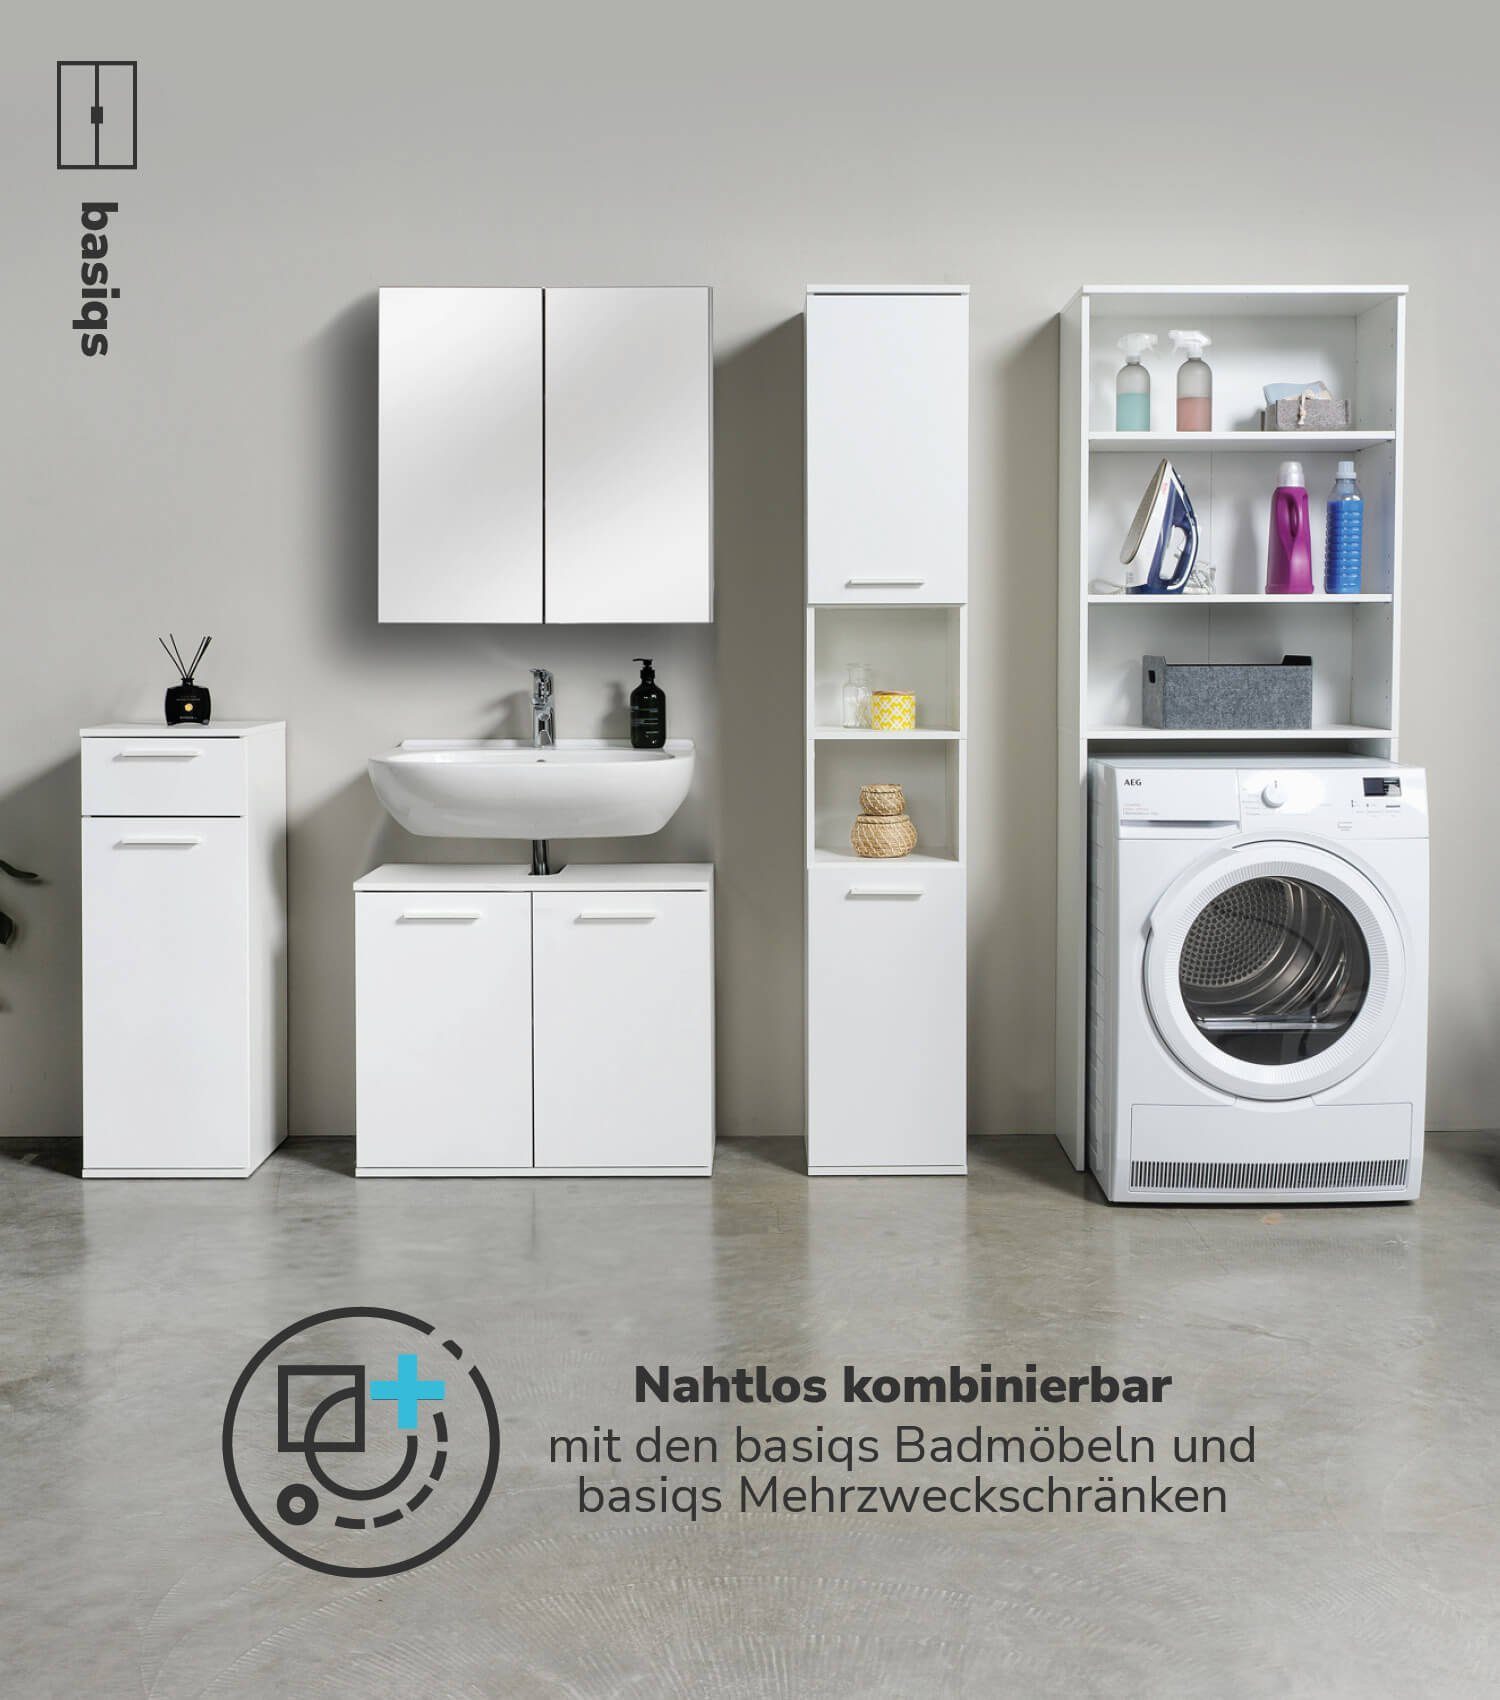 Überbauschrank o. Überbau Saubermann Holz & Trockner, aus Weiß (Offen) Waschmaschinen mokebo Der Waschmaschinenumbauschrank für